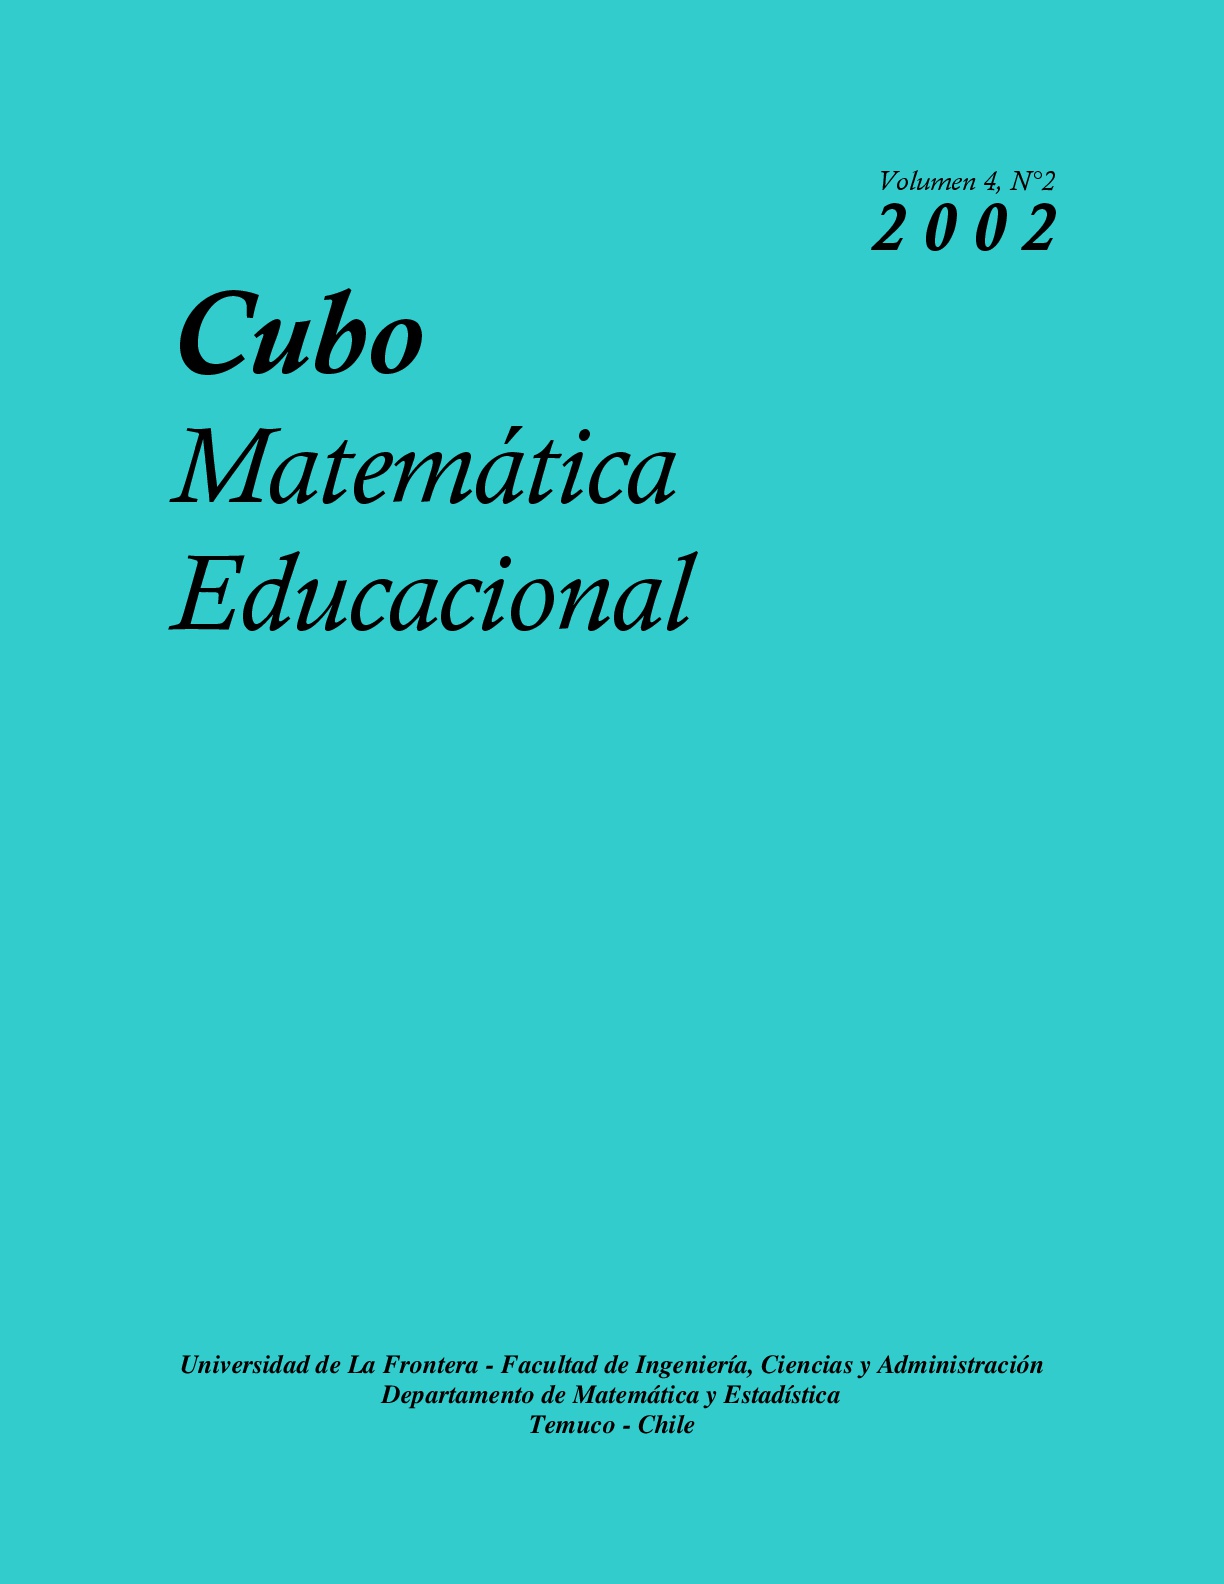 					View Vol. 4 No. 2 (2002): CUBO, Matemática Educacional
				